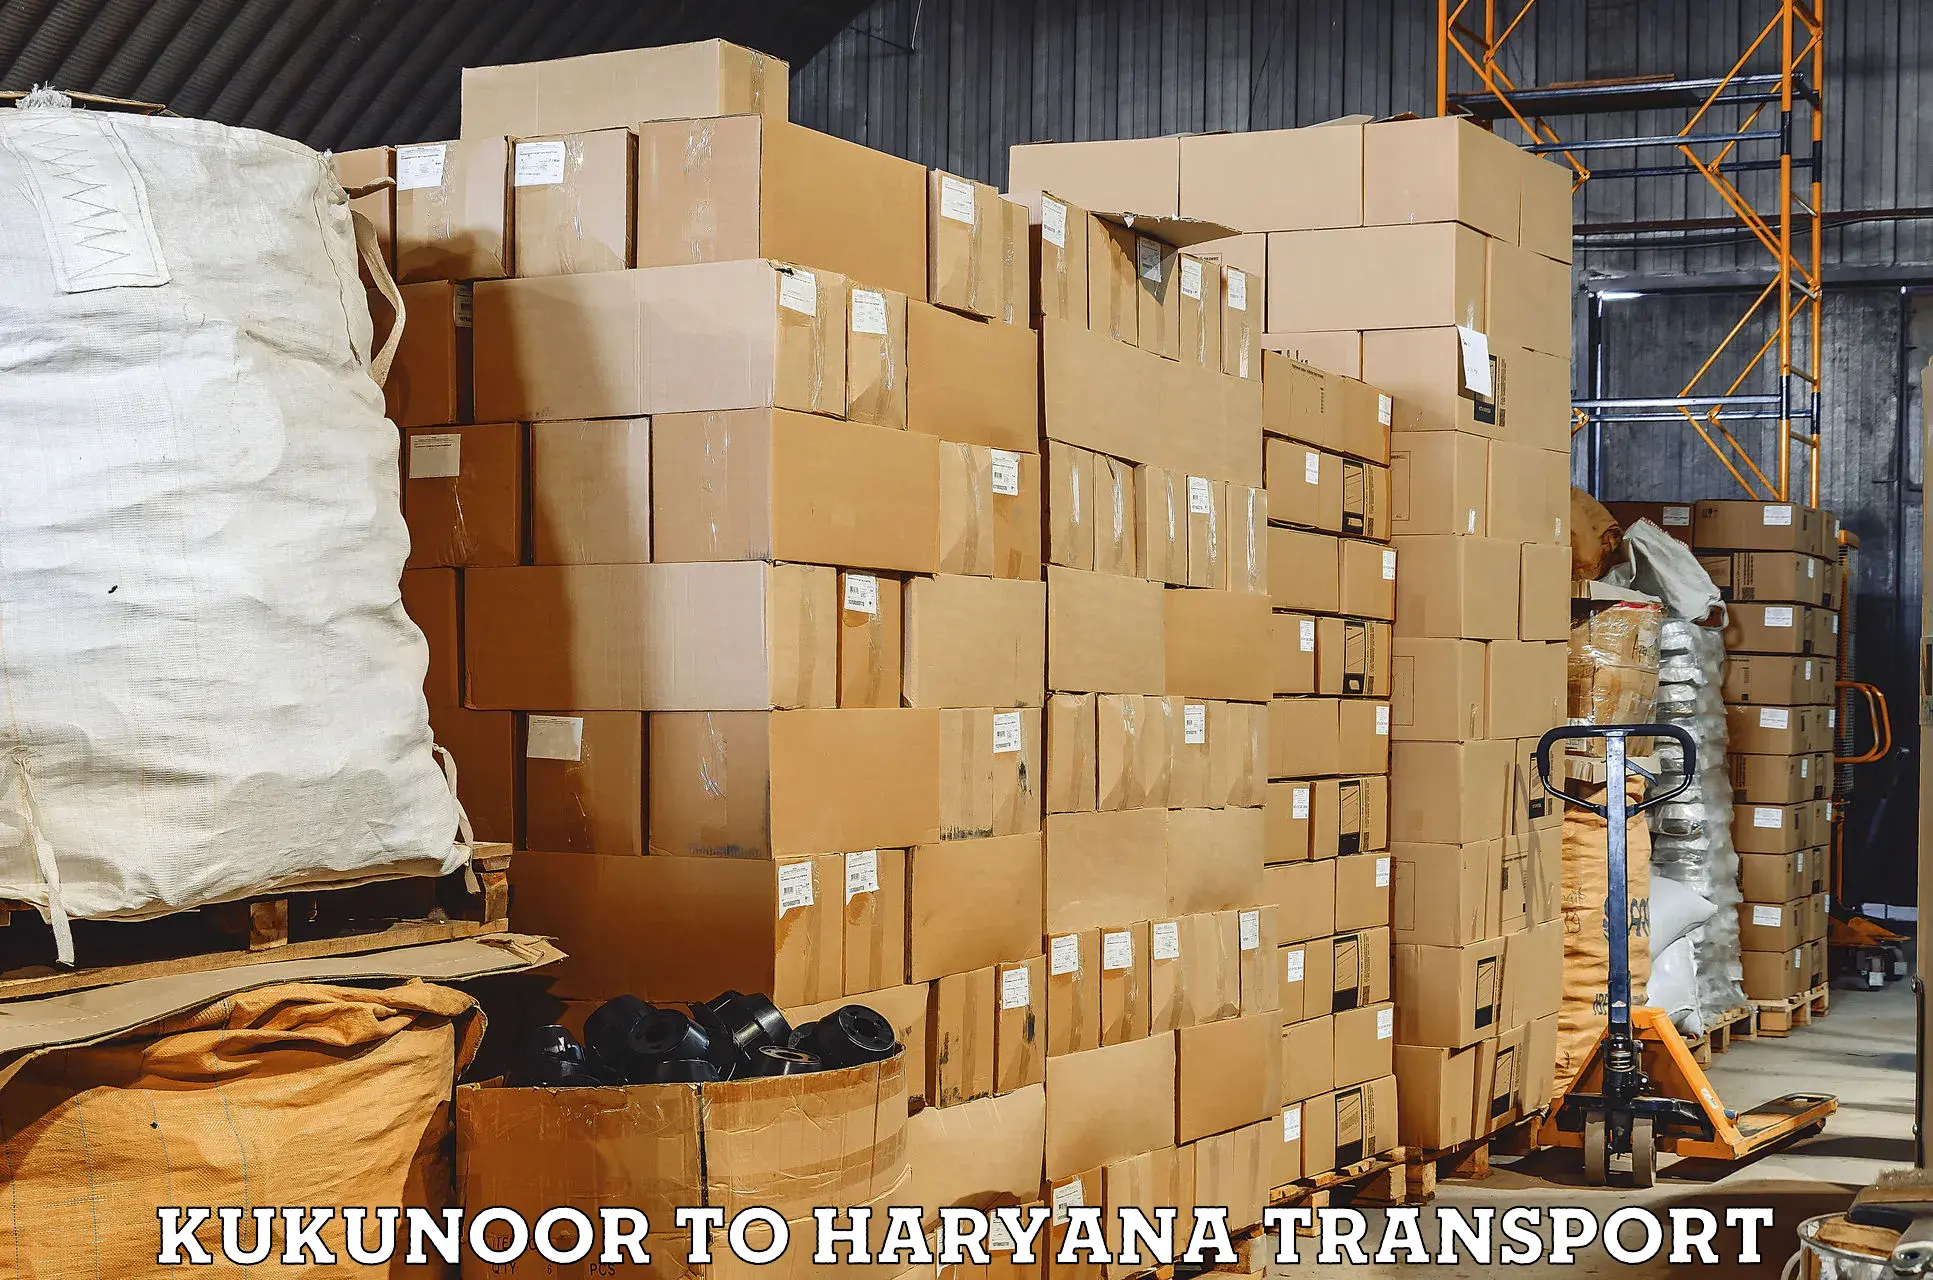 Vehicle transport services Kukunoor to Haryana